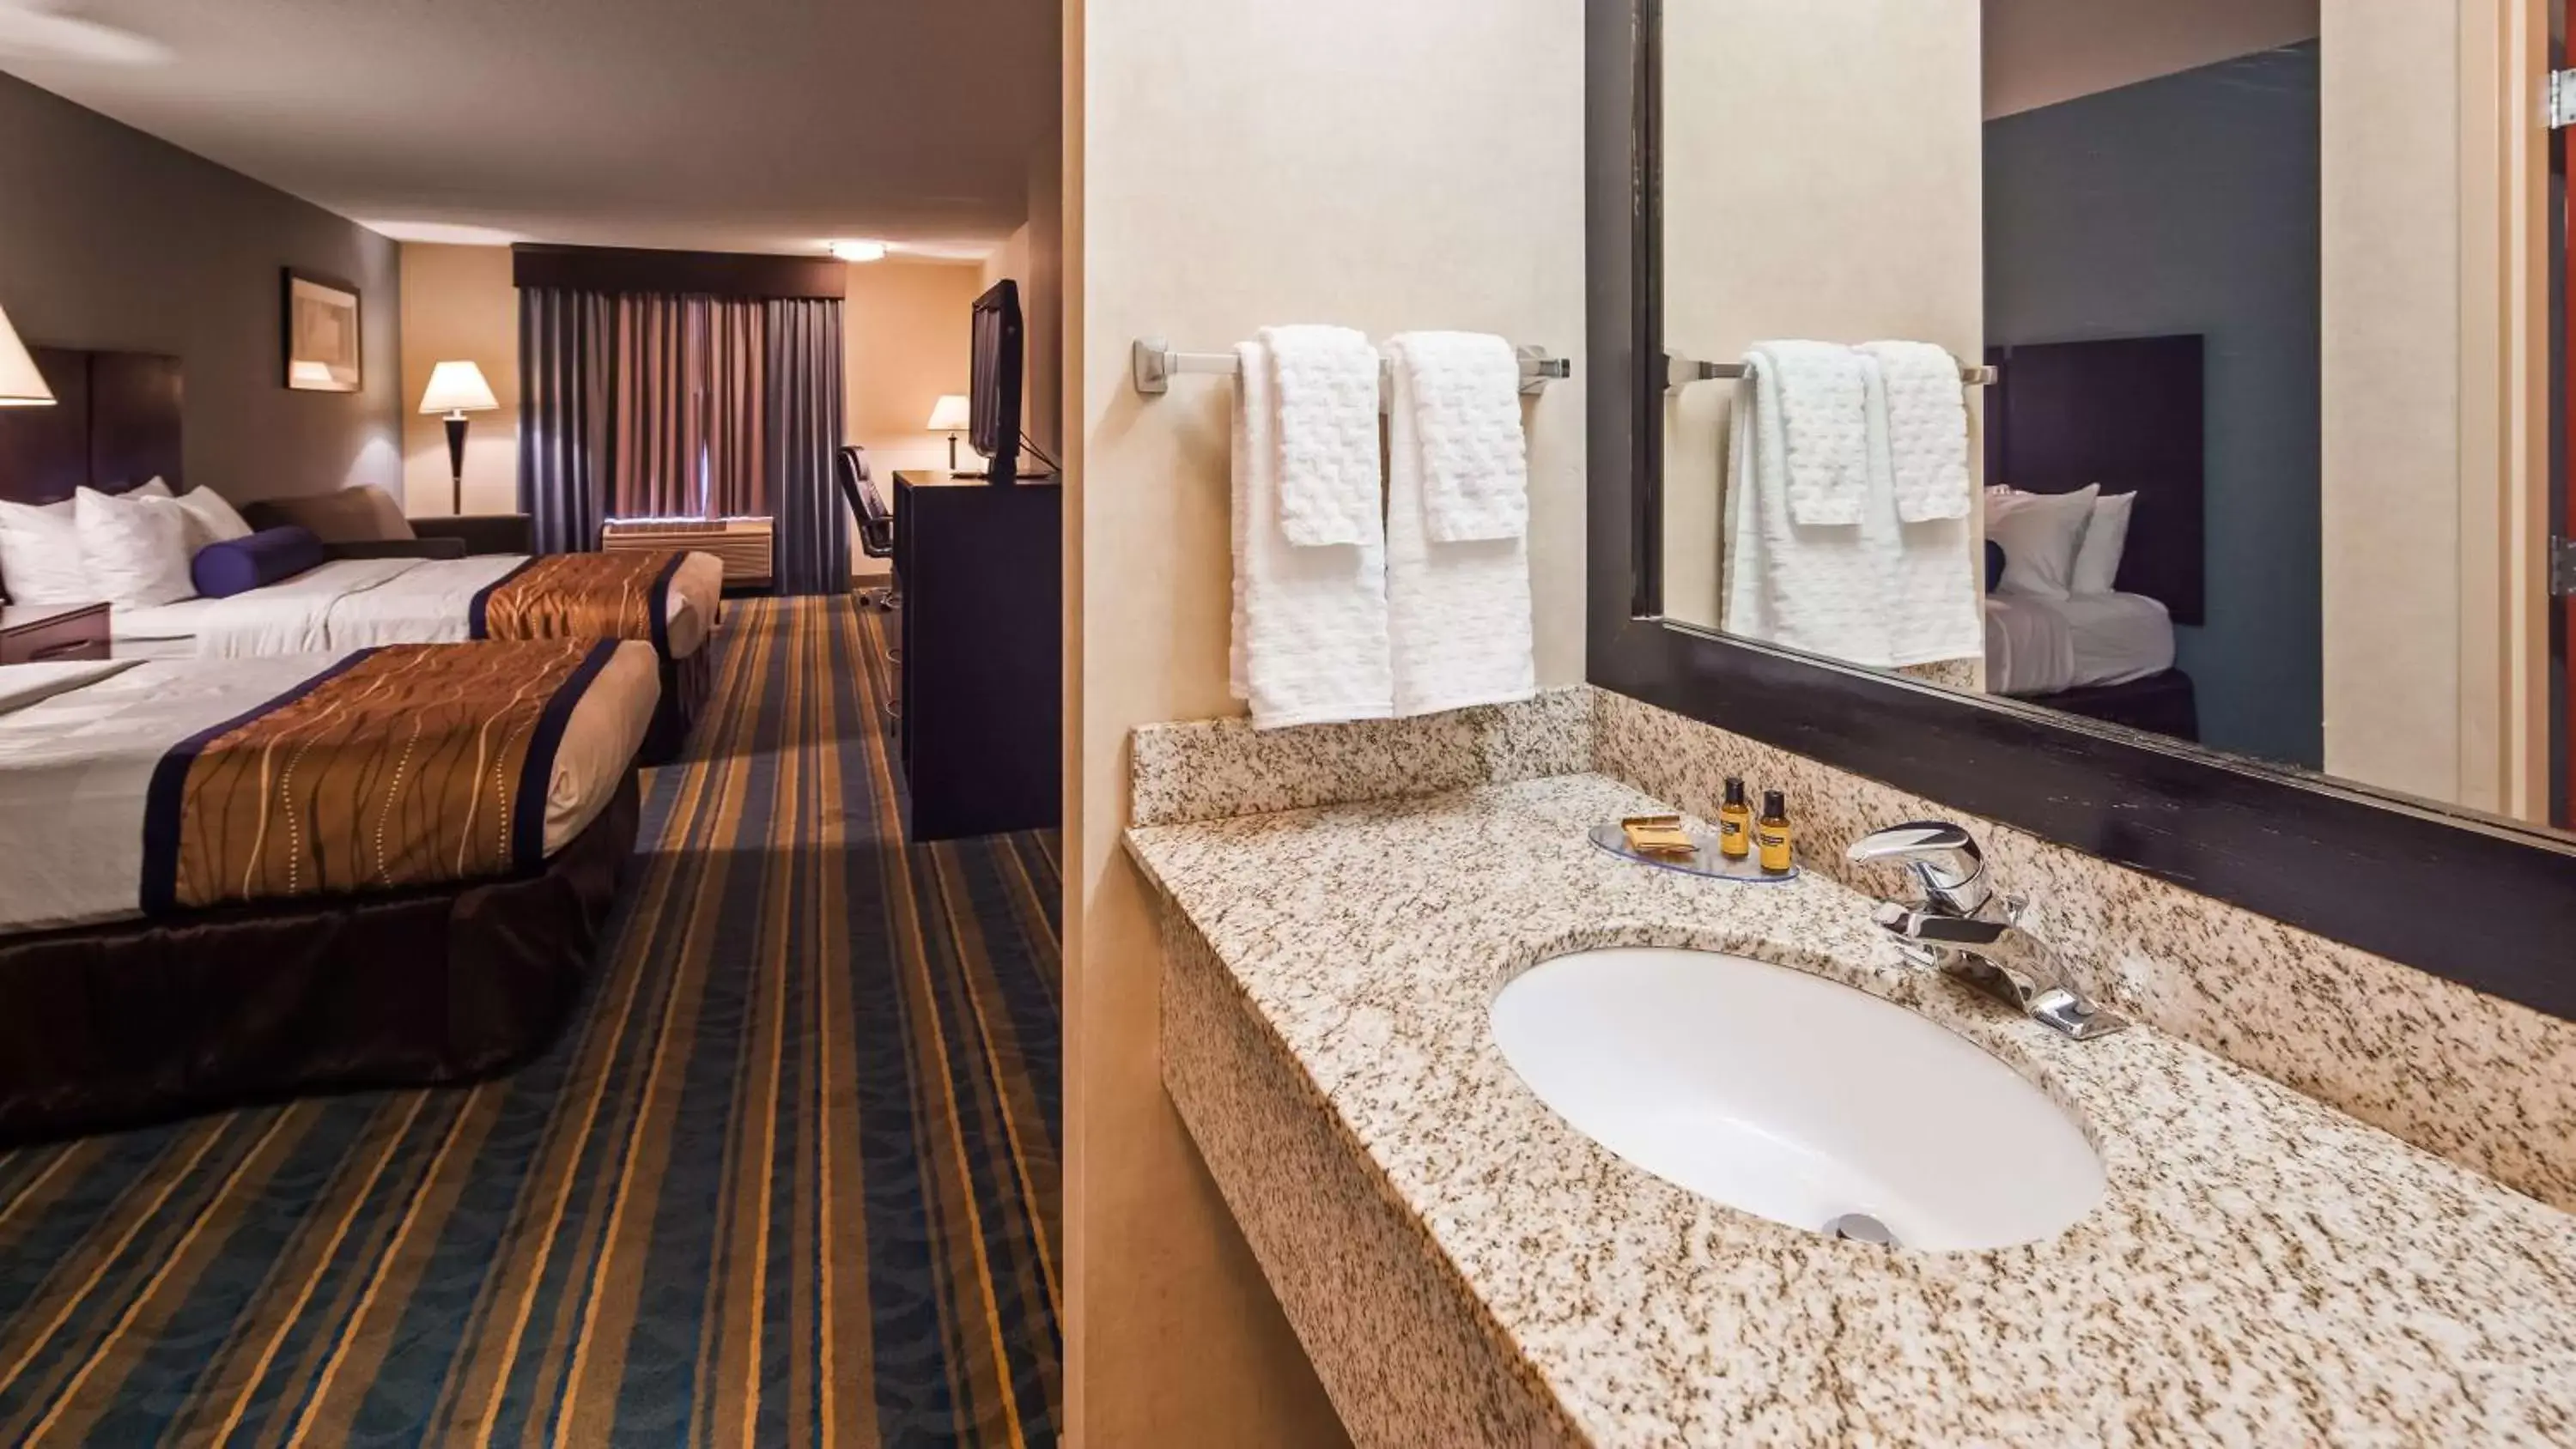 Photo of the whole room, Bathroom in Best Western Plus Berkshire Hills Inn & Suites